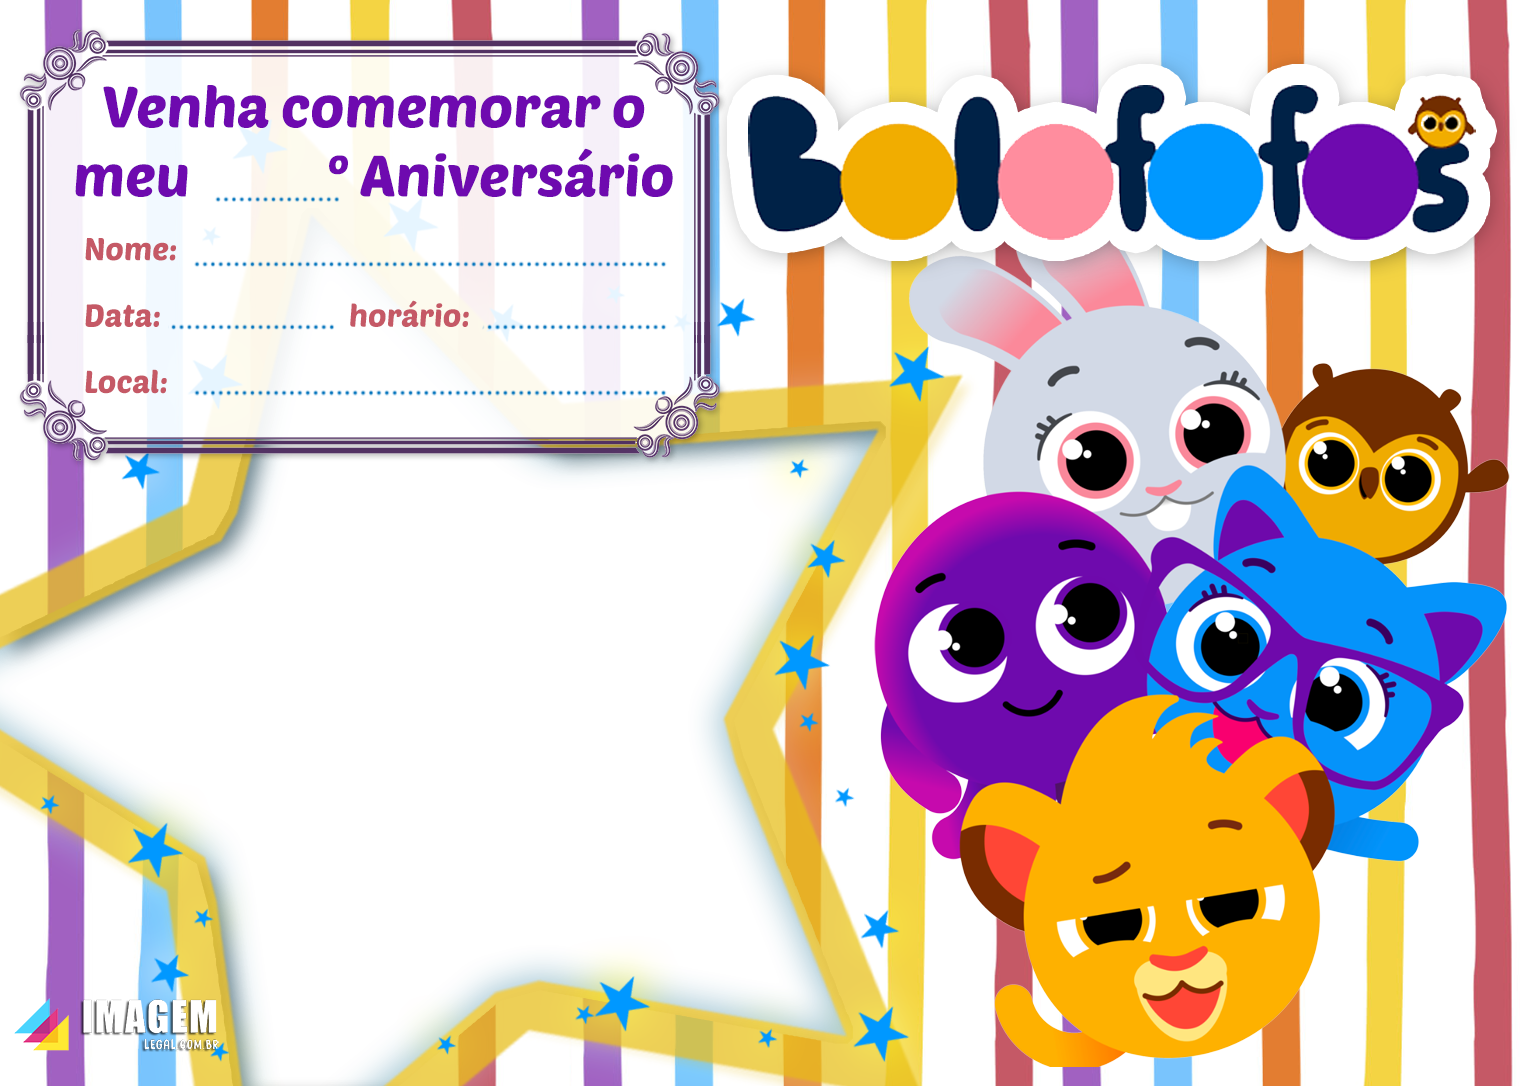 Grátis - Fazer convite online convite digital aniversário bolofofos